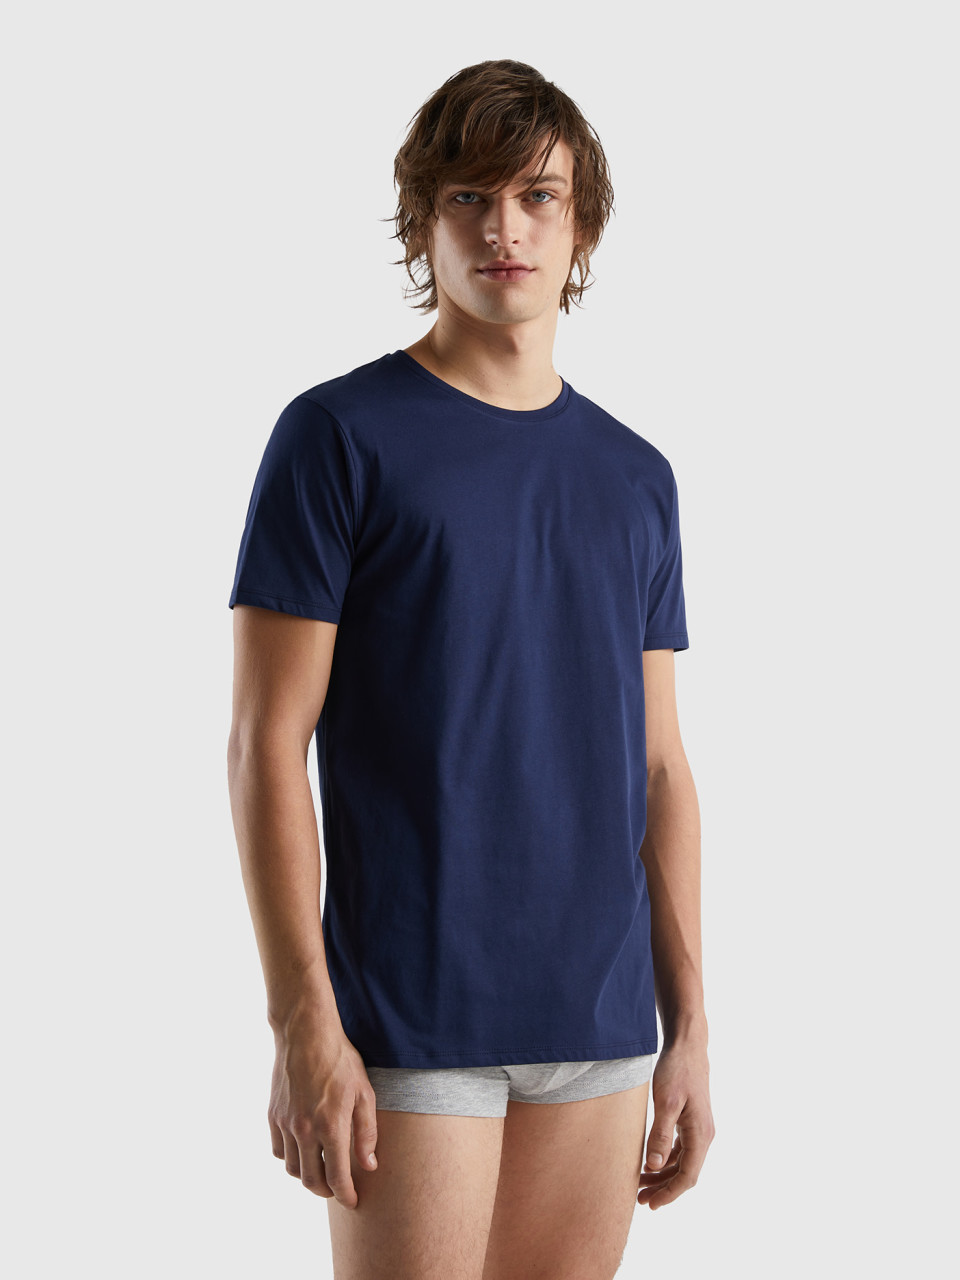 Benetton, Long Fiber Cotton T-shirt, Dark Blue, Men